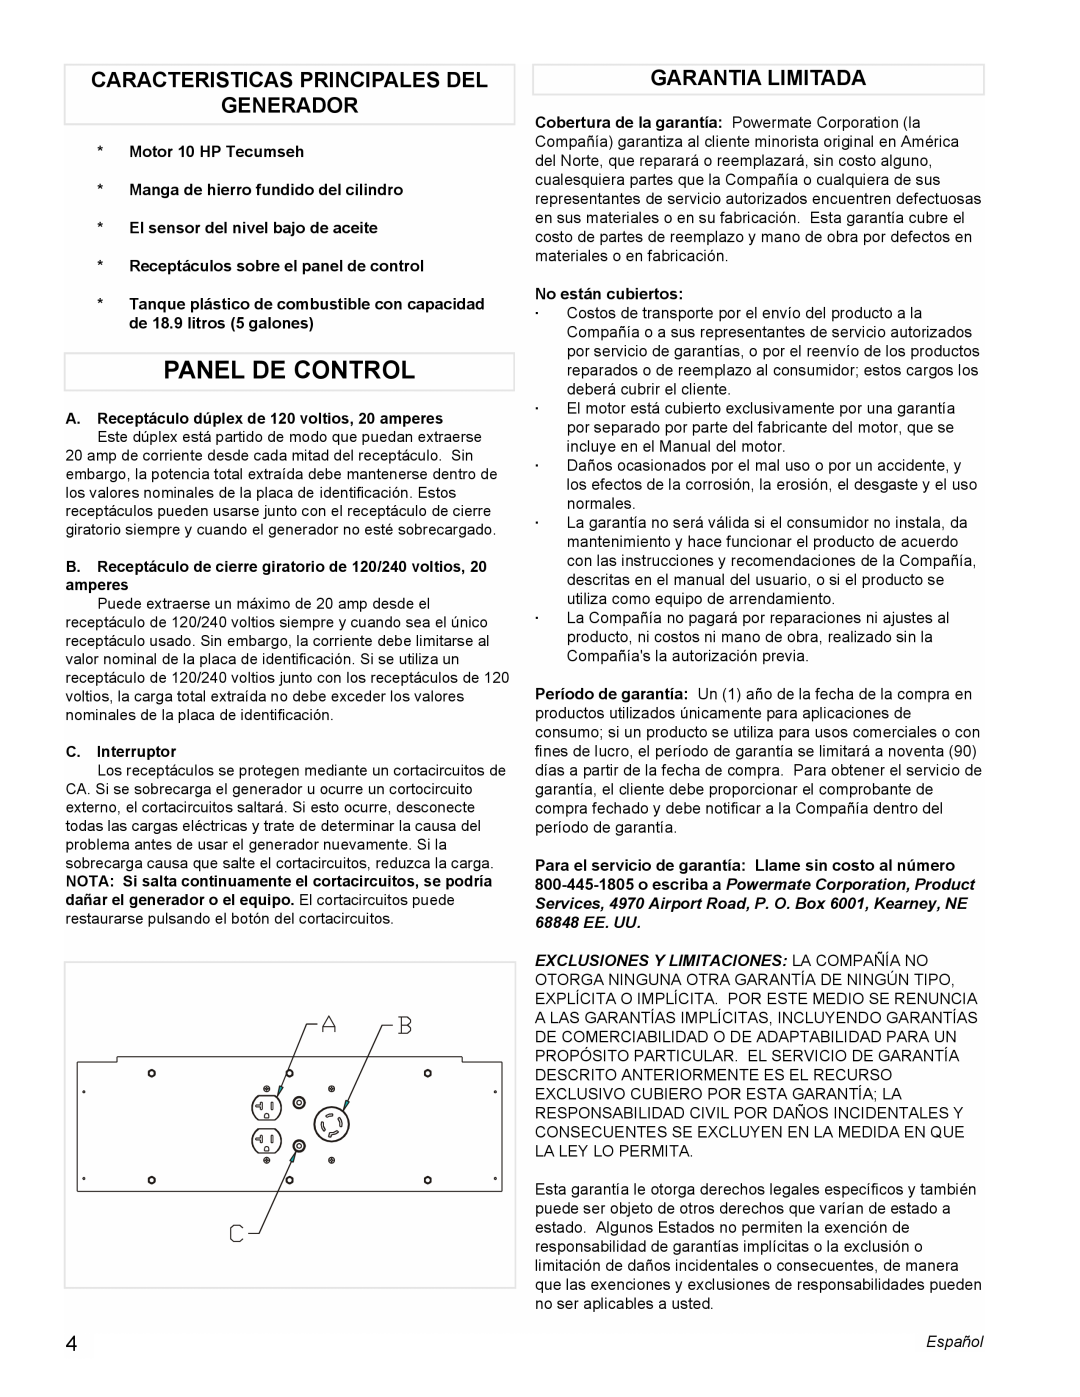 Powermate PMA525302.01 manual Panel De Control, Caracteristicas Principales Del Generador, Garantia Limitada 